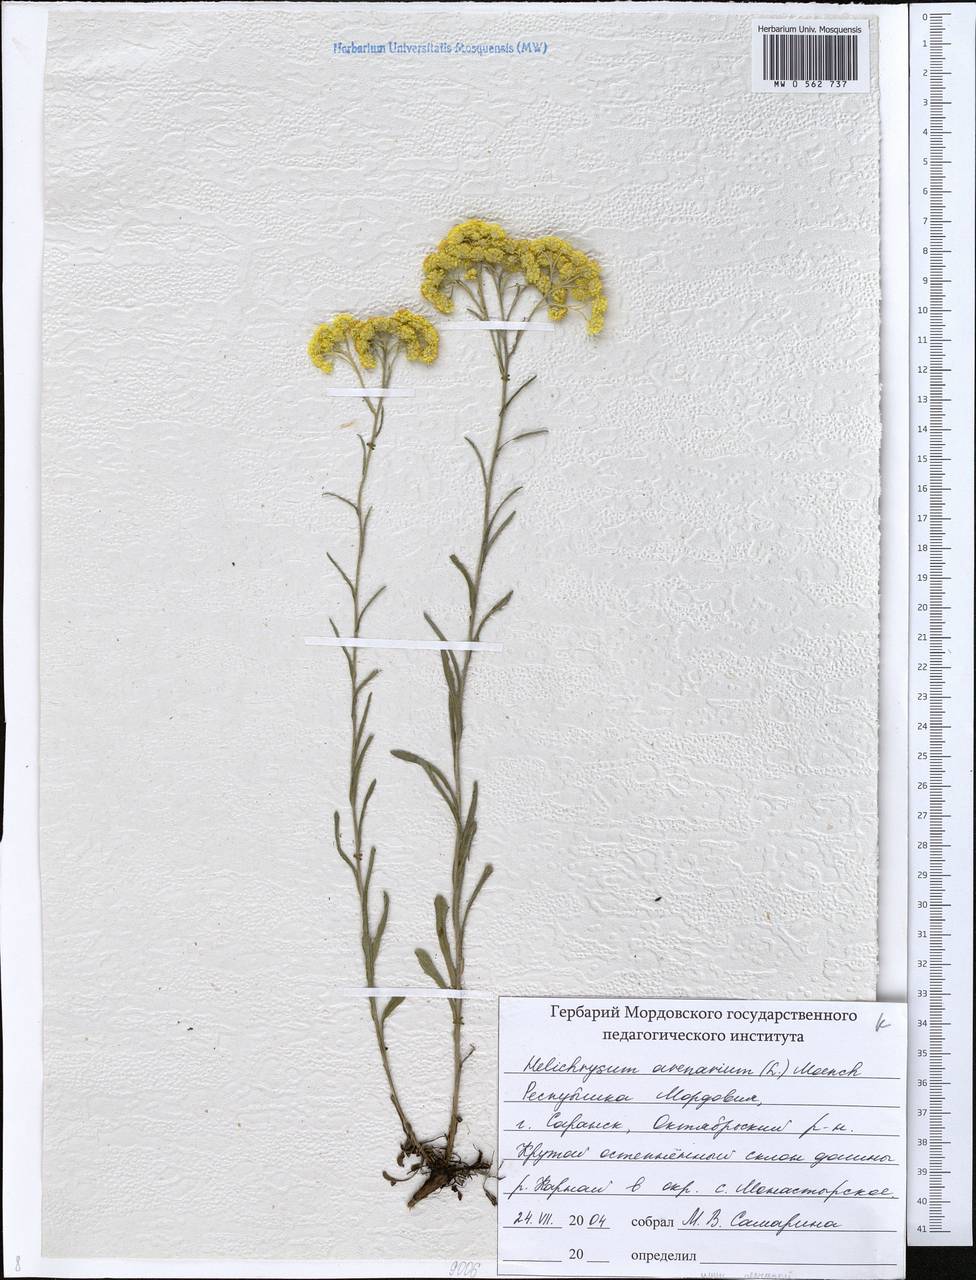 Helichrysum arenarium (L.) Moench, Eastern Europe, Middle Volga region (E8) (Russia)